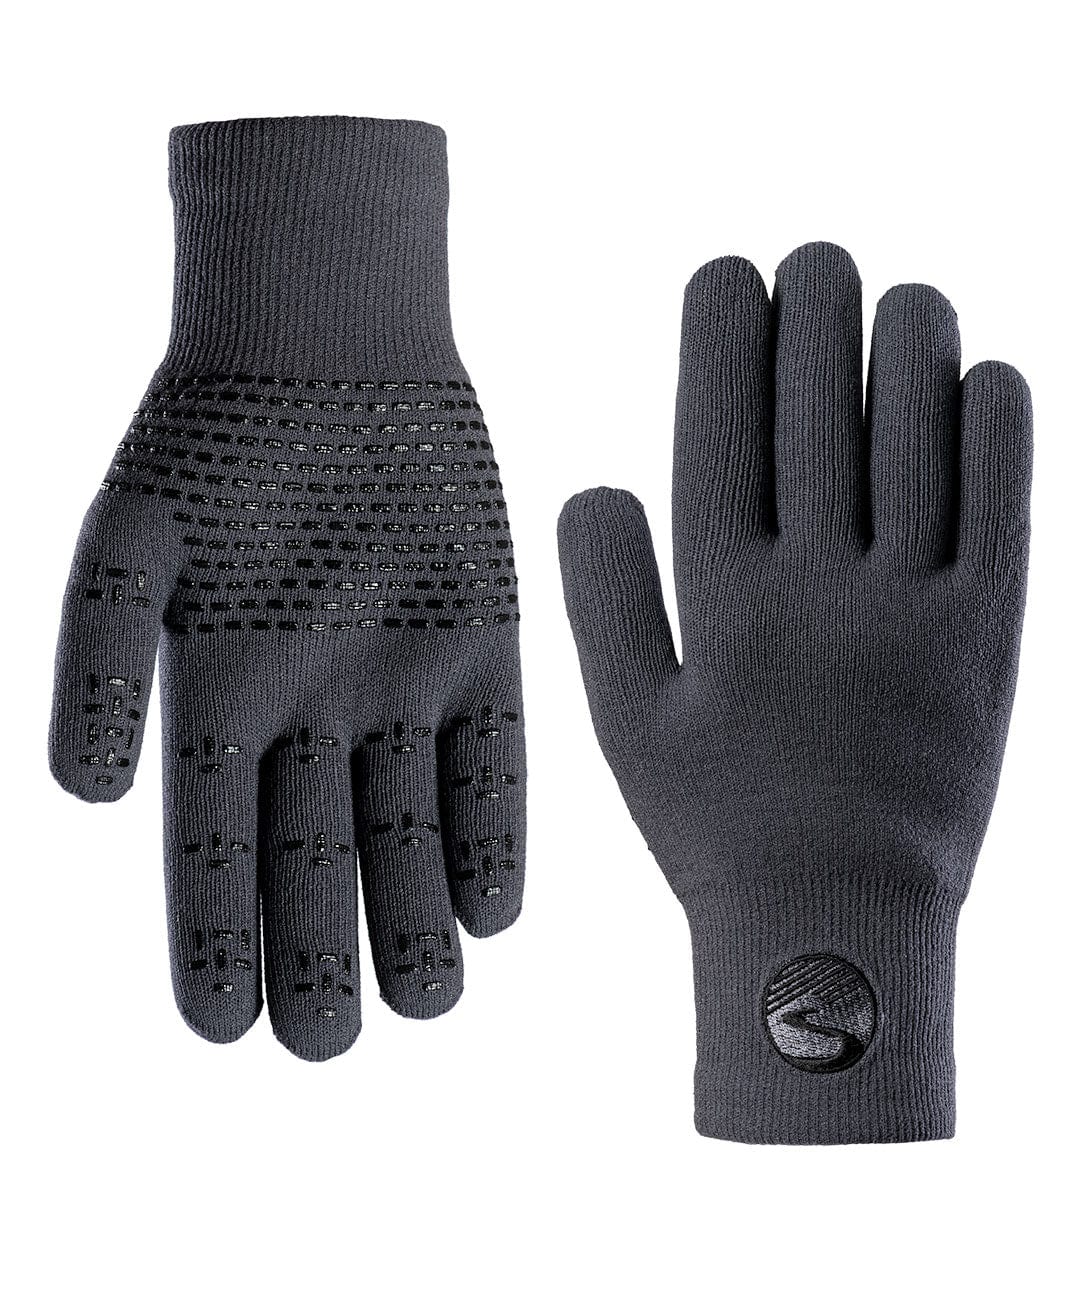 Crosspoint Waterproof Wool Knit Gloves